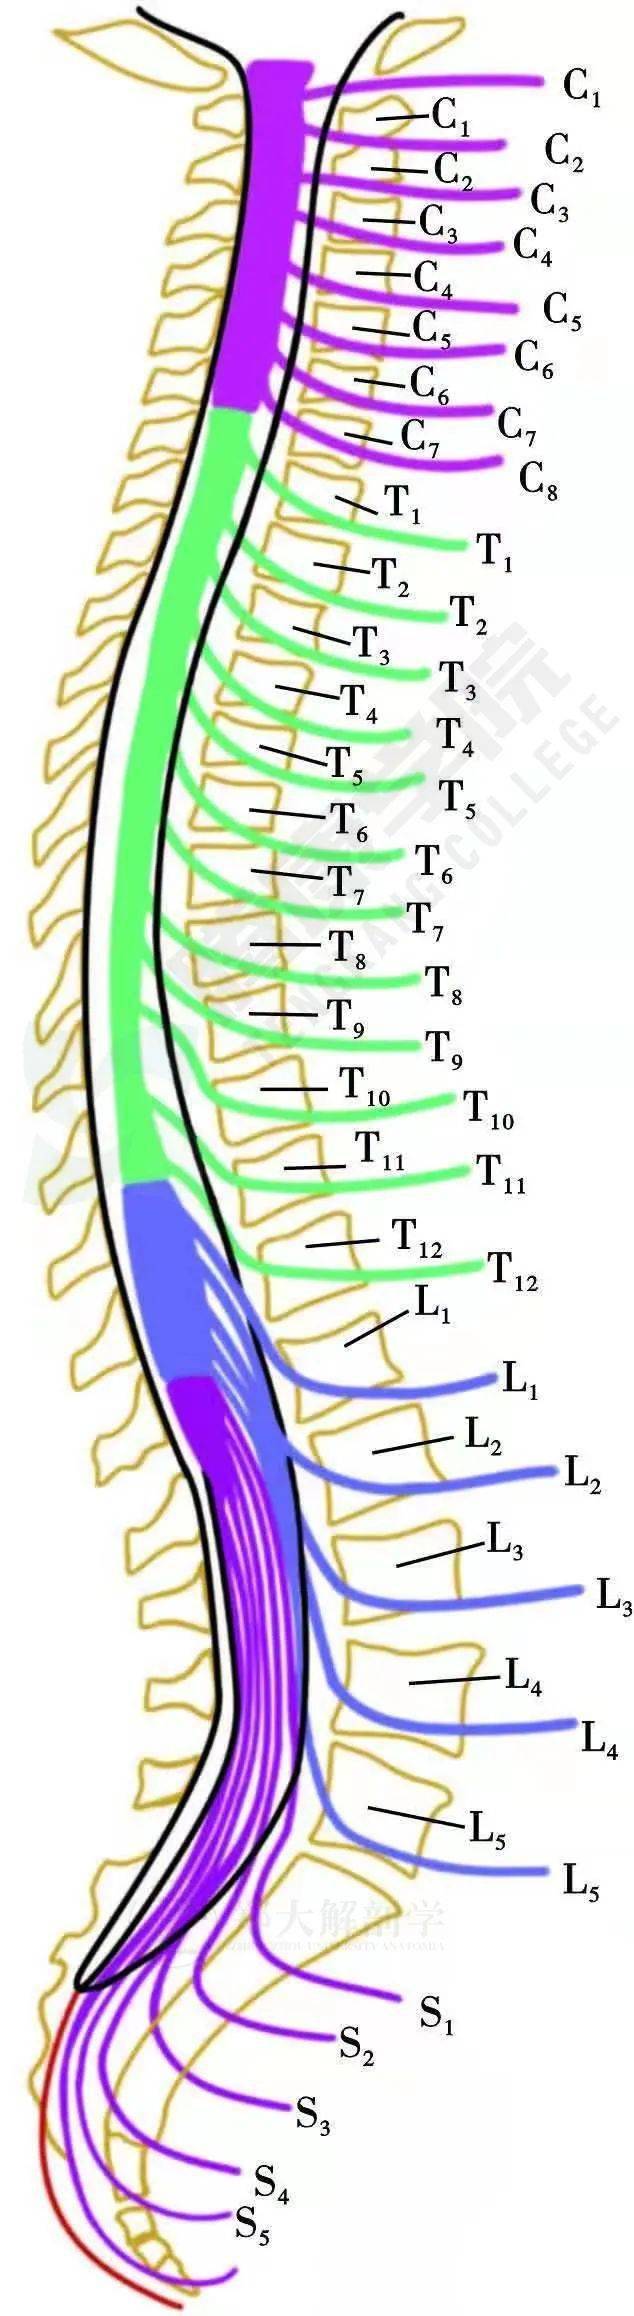 脊神经及其病变症状